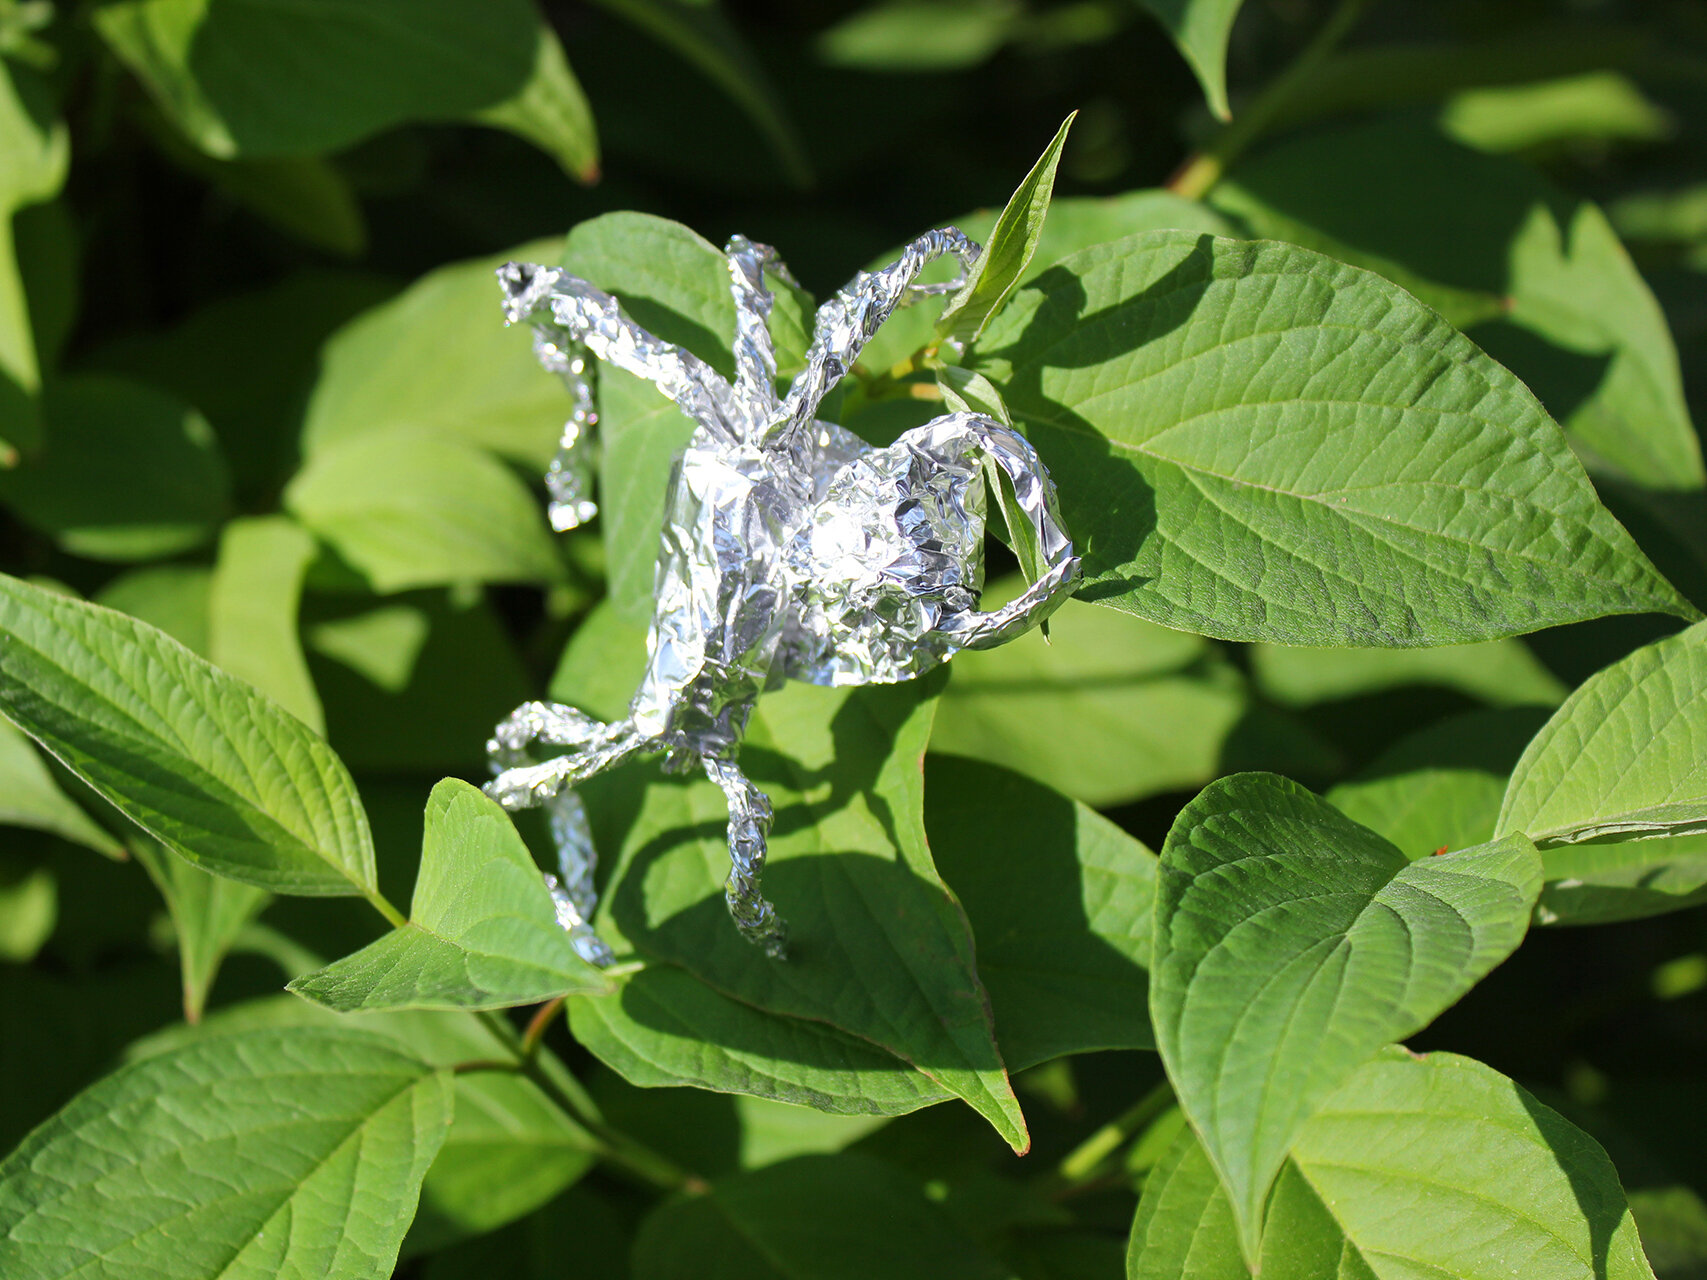 Tin Foil Spider On Leaf 01